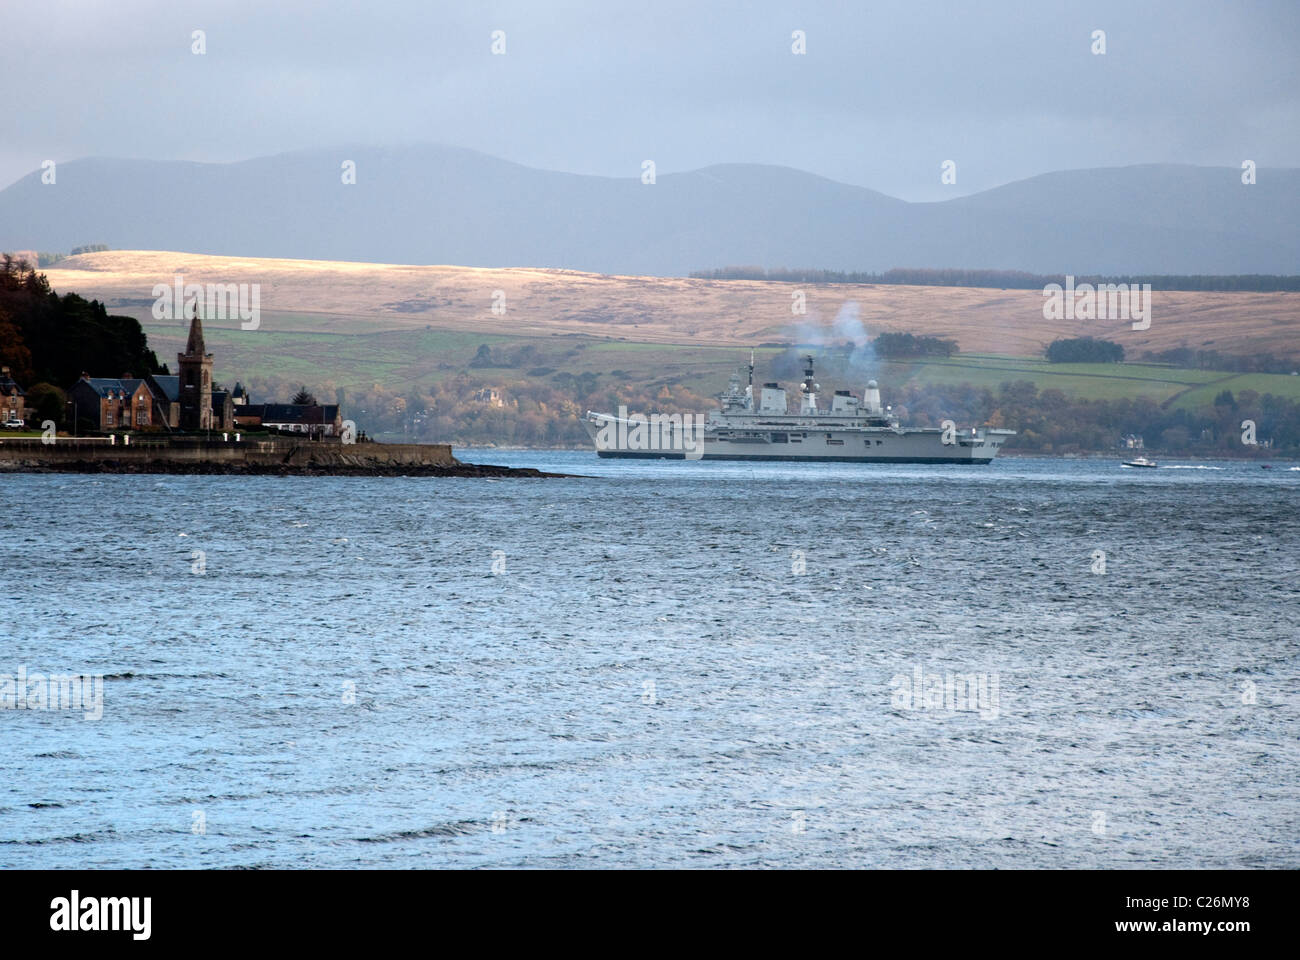 La Royal Navy luce della portaerei HMS Ark Royal sul suo viaggio di addio a Firth of Clyde estuario Scozia Scotland Foto Stock